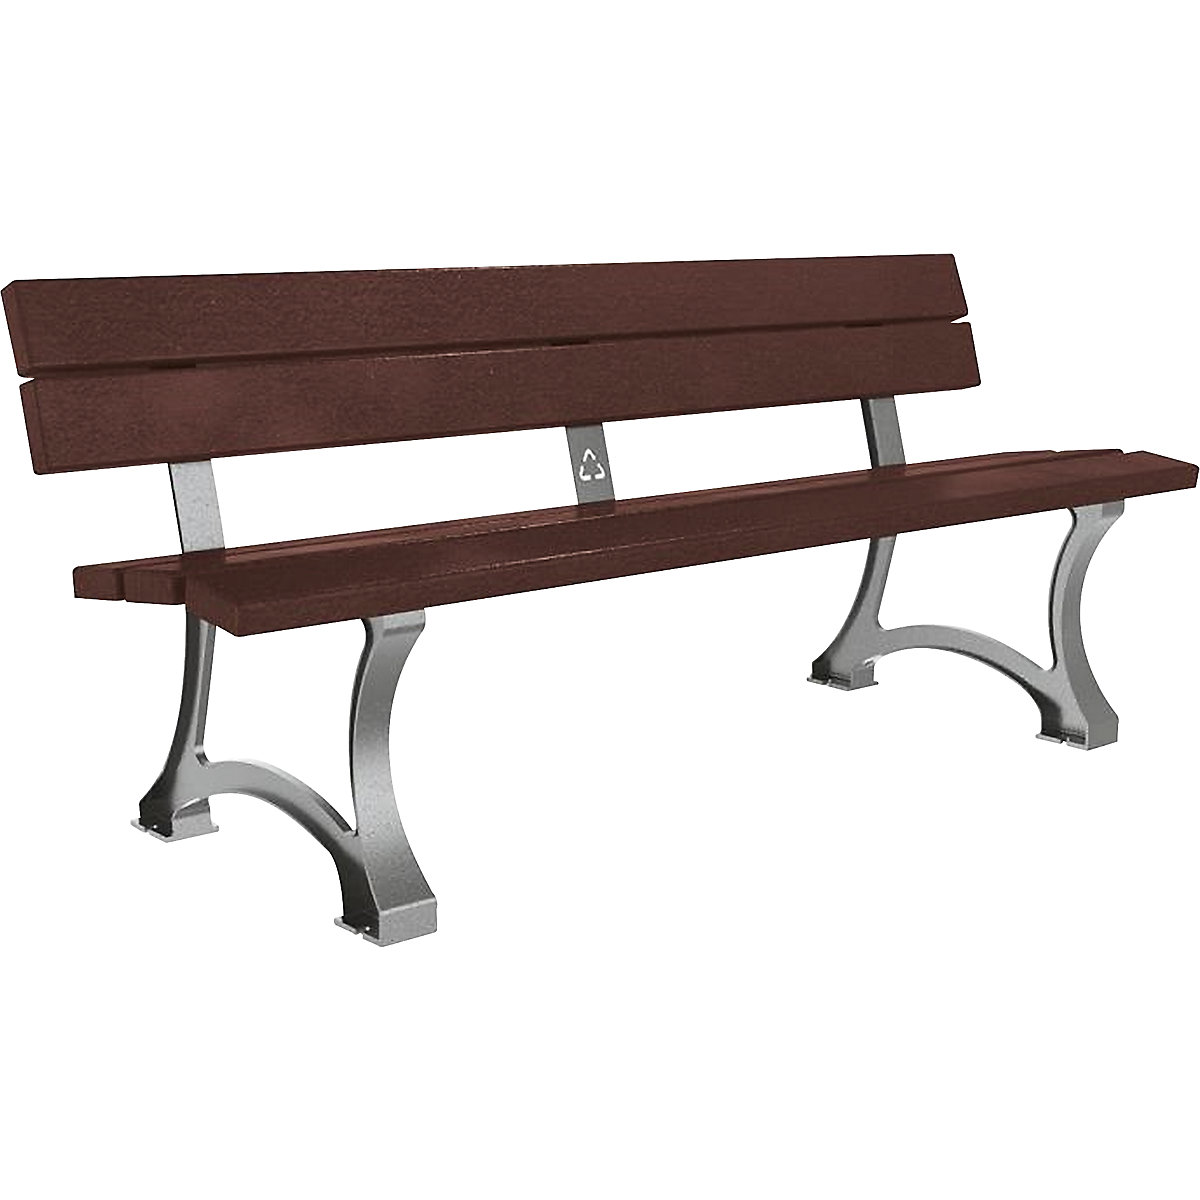 MORA bench - PROCITY